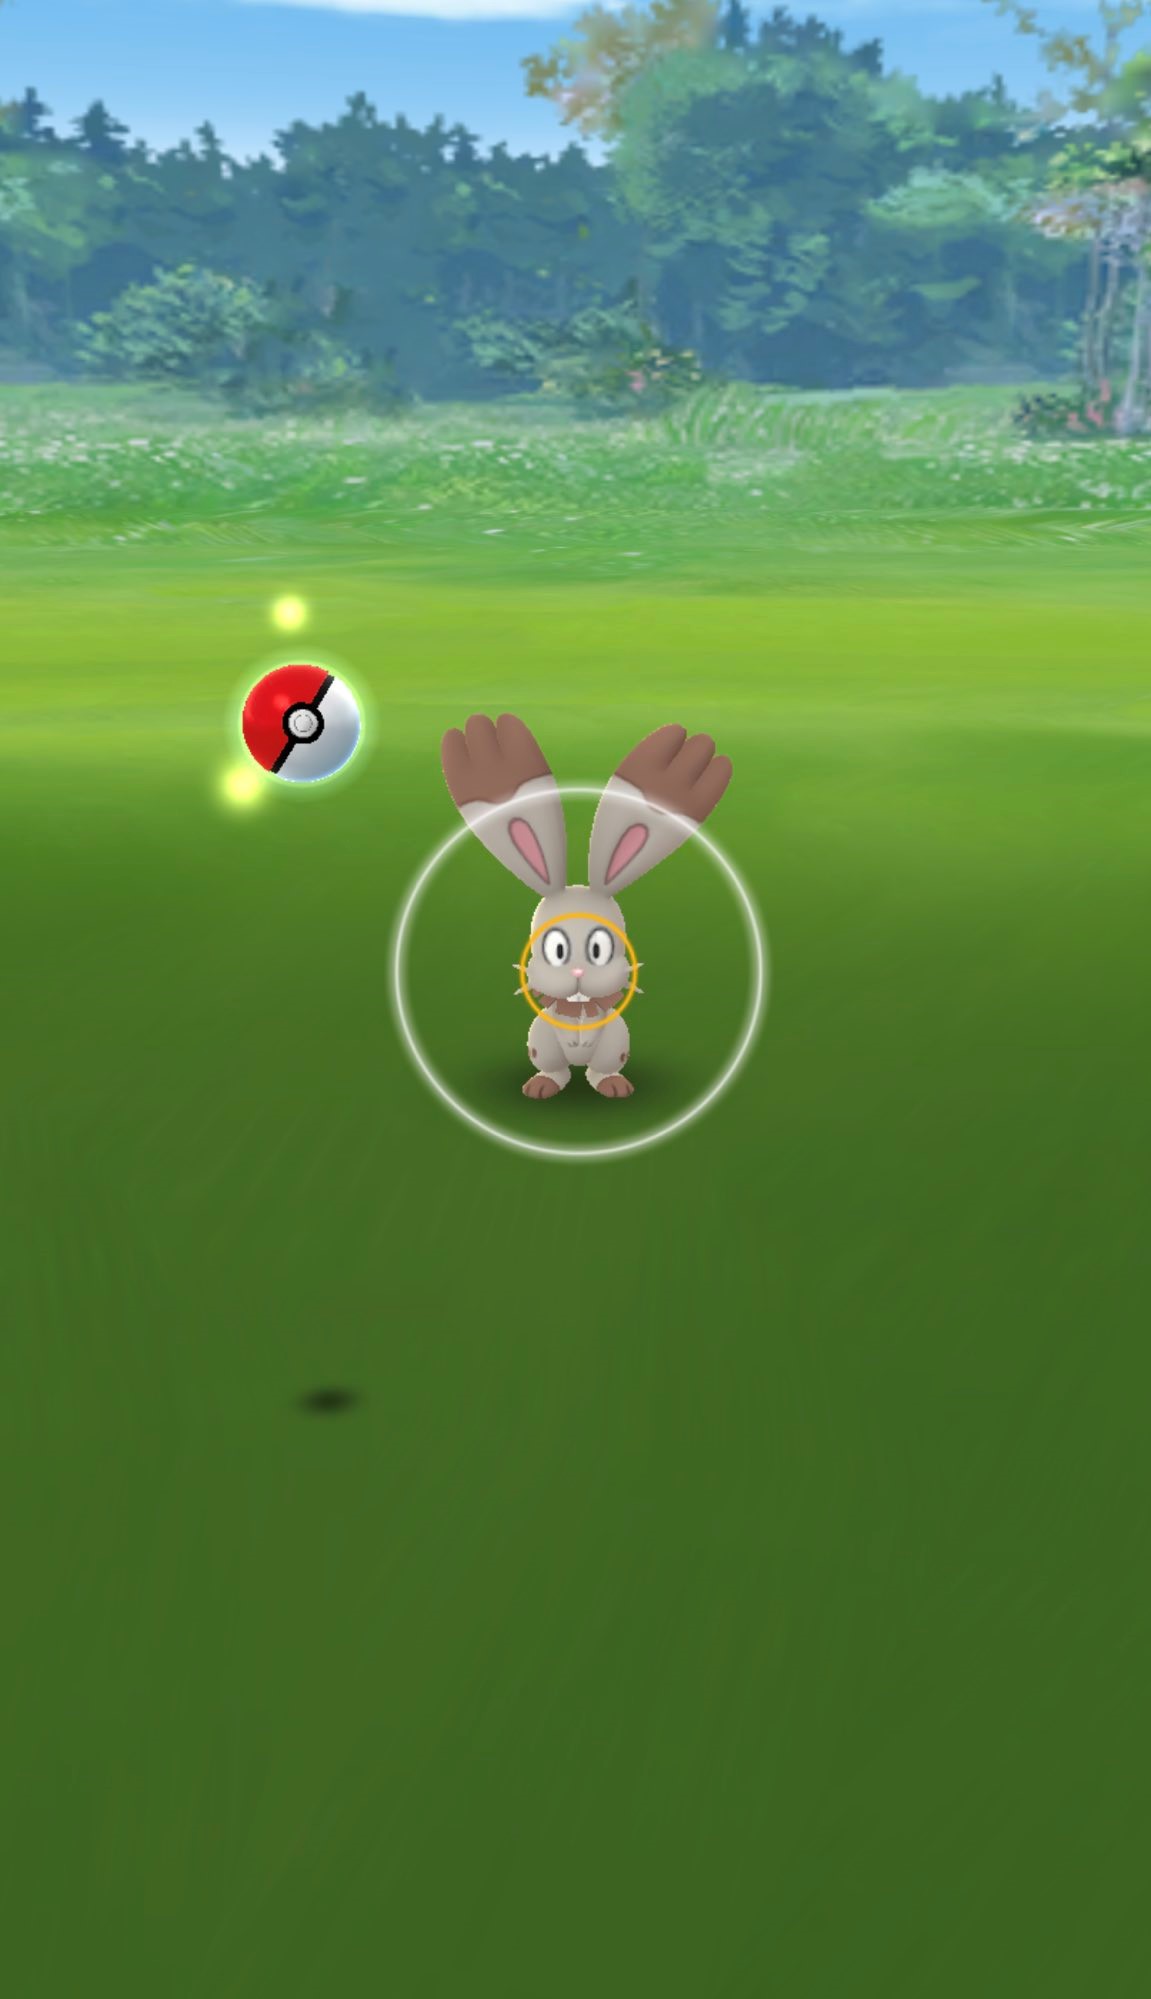 Jogada Excelente - Pokémon GO: Com o lançamento da nova mecânica